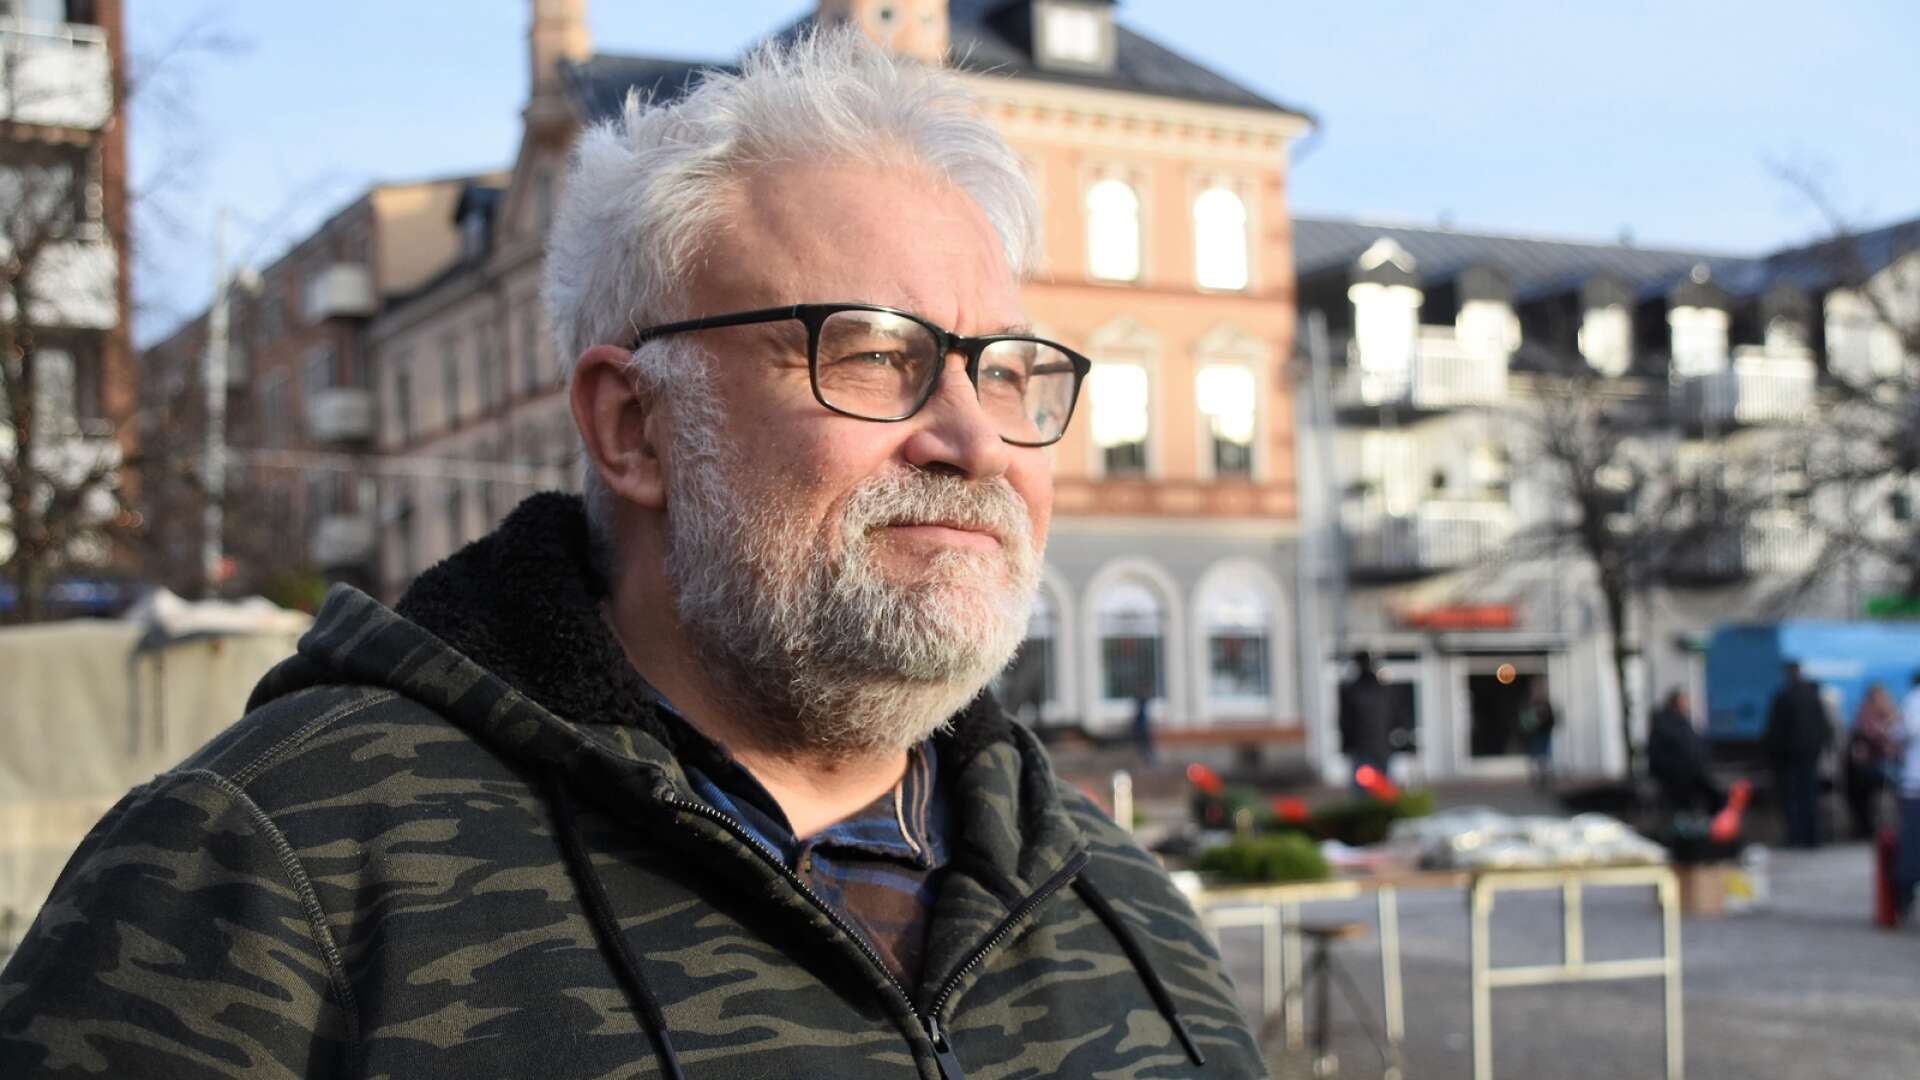 Peppe Eriksson, LP-kontaktens föreståndare och pastor i pingstkyrkan, fortsätter sin kamp mot missbruket och den psykiska ohälsan i Arvika. 